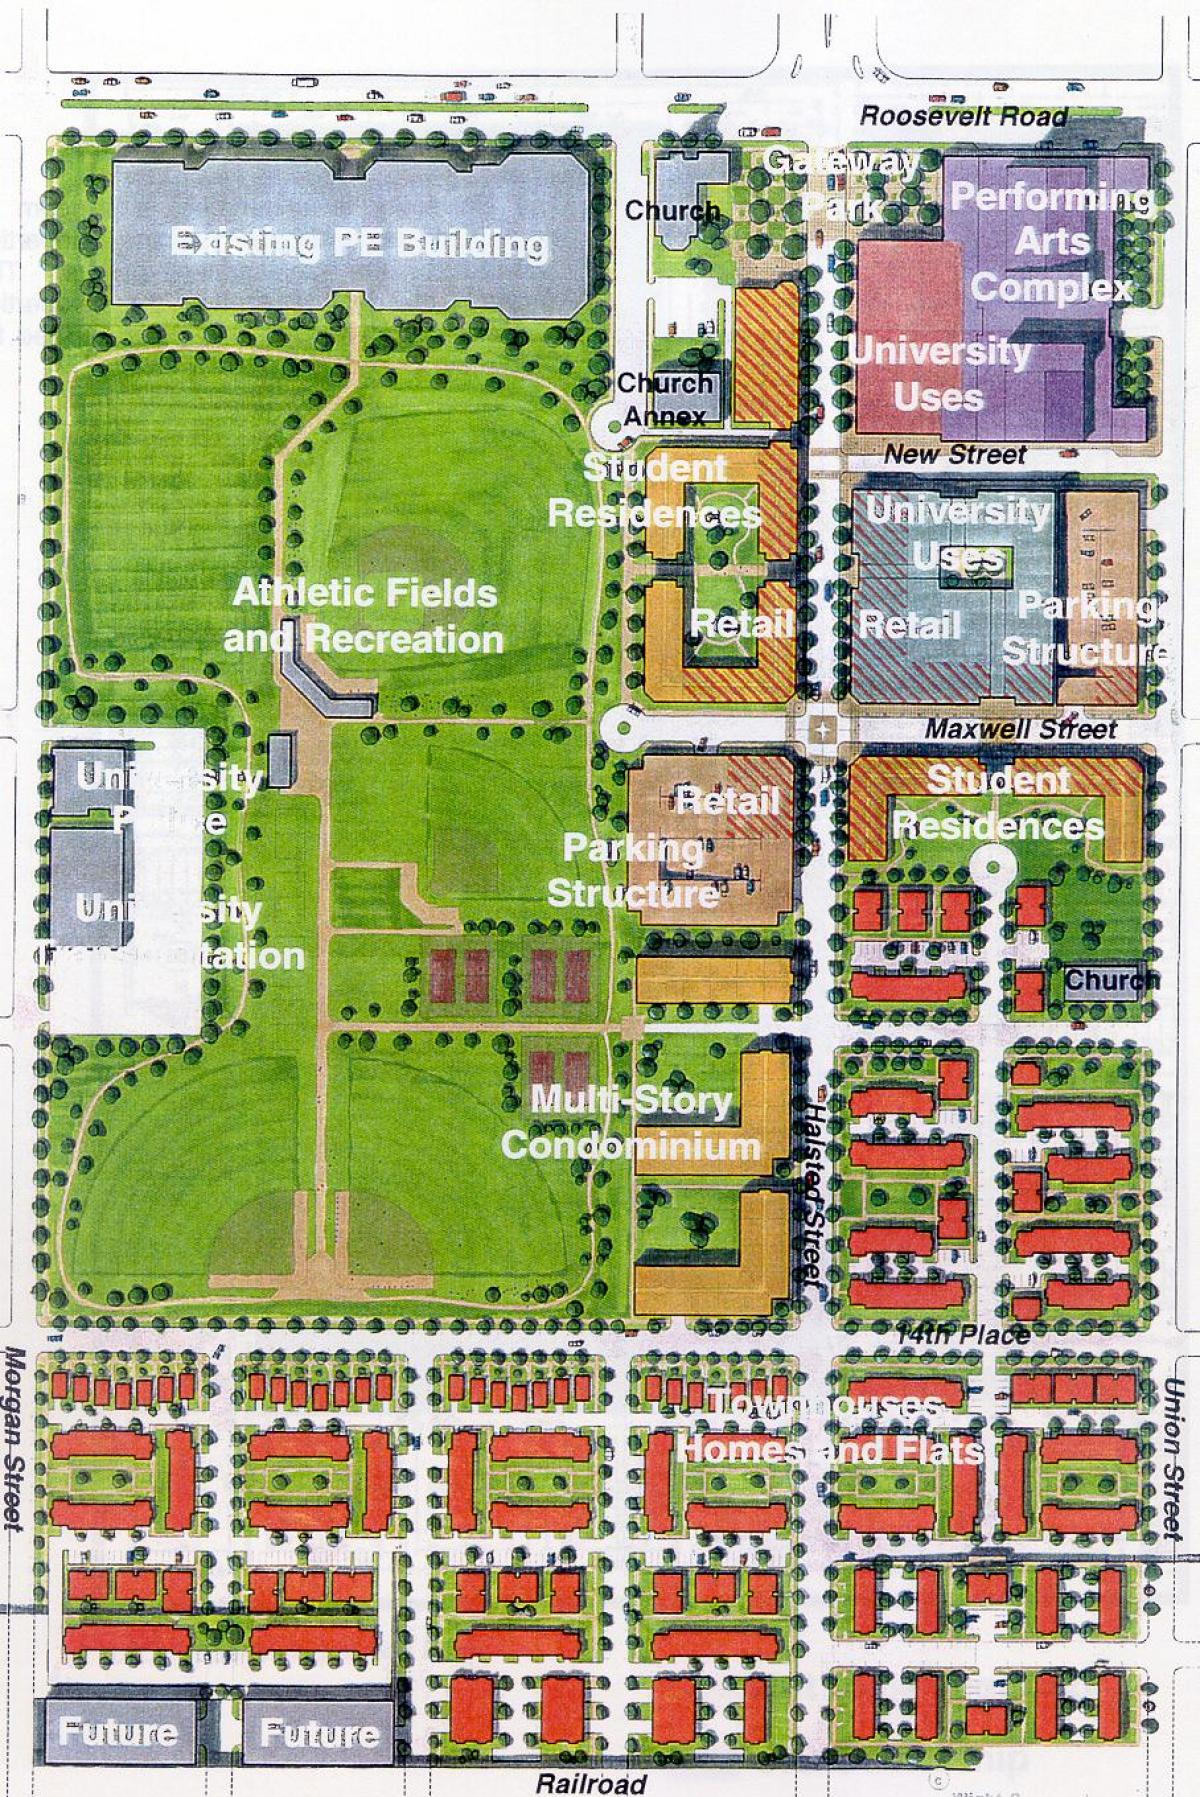 mapa da UIC leste campus